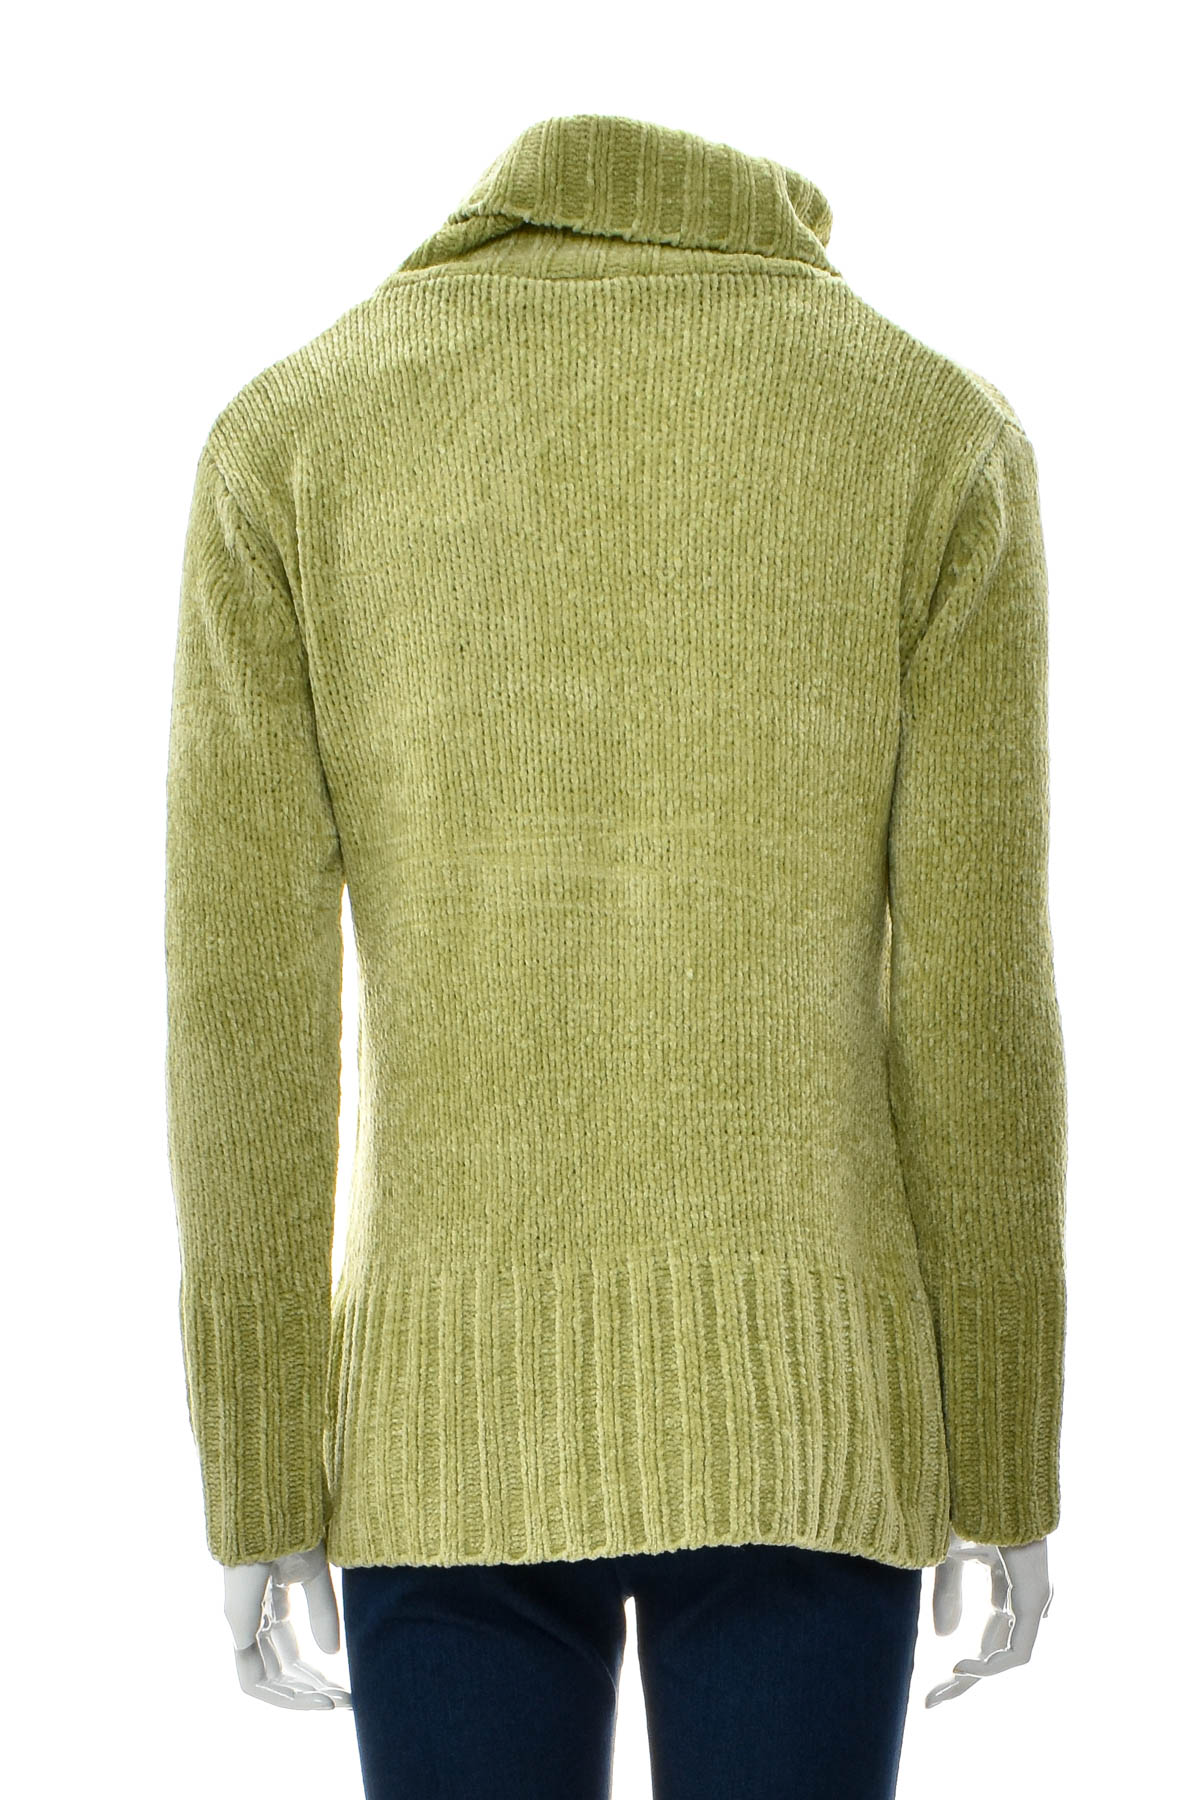 Women's sweater - Yoors - 1